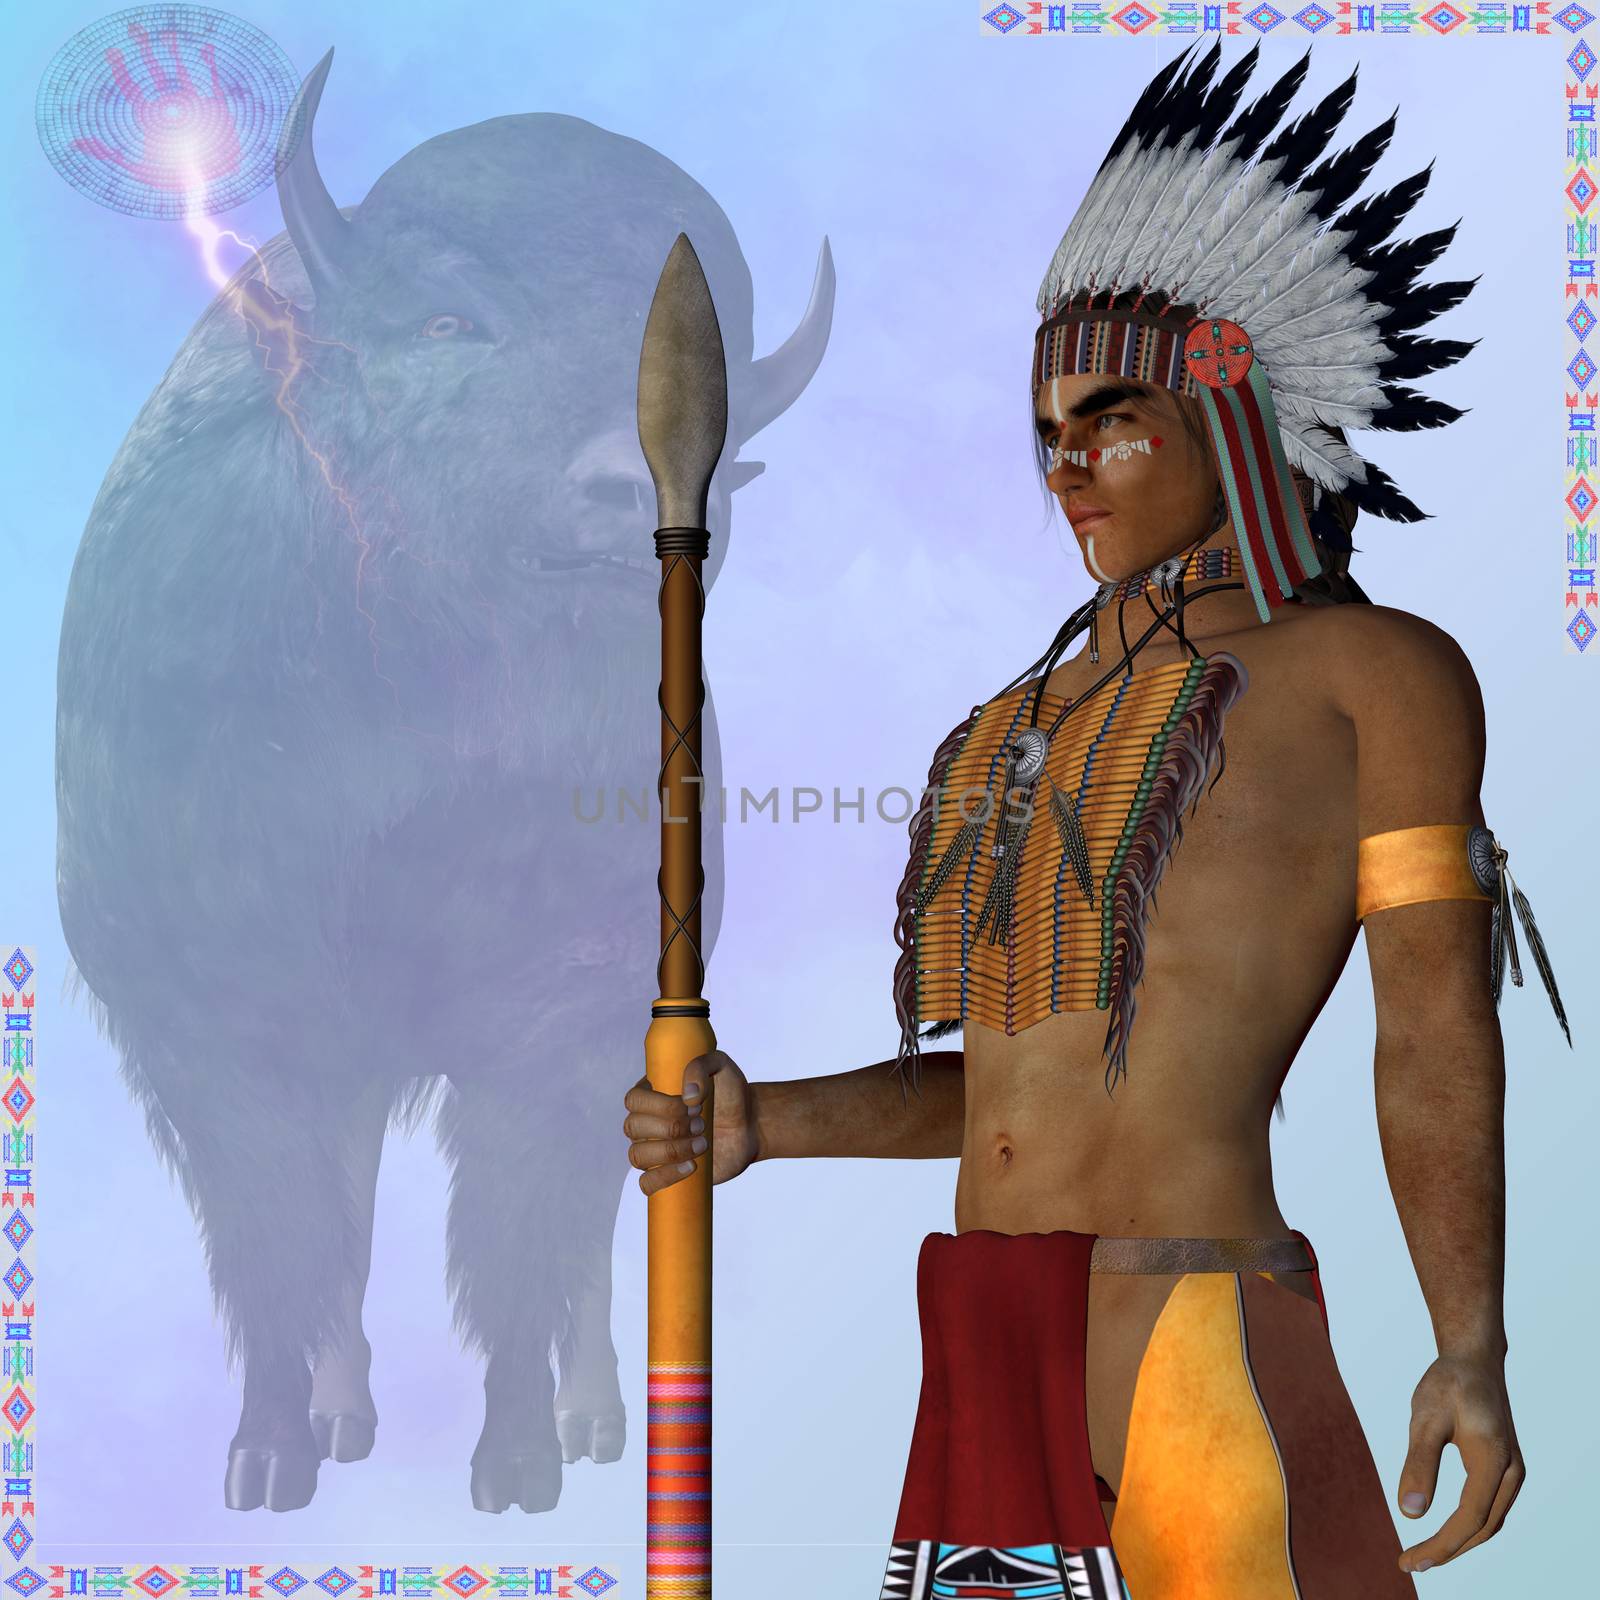 Indian Standing Buffalo by Catmando